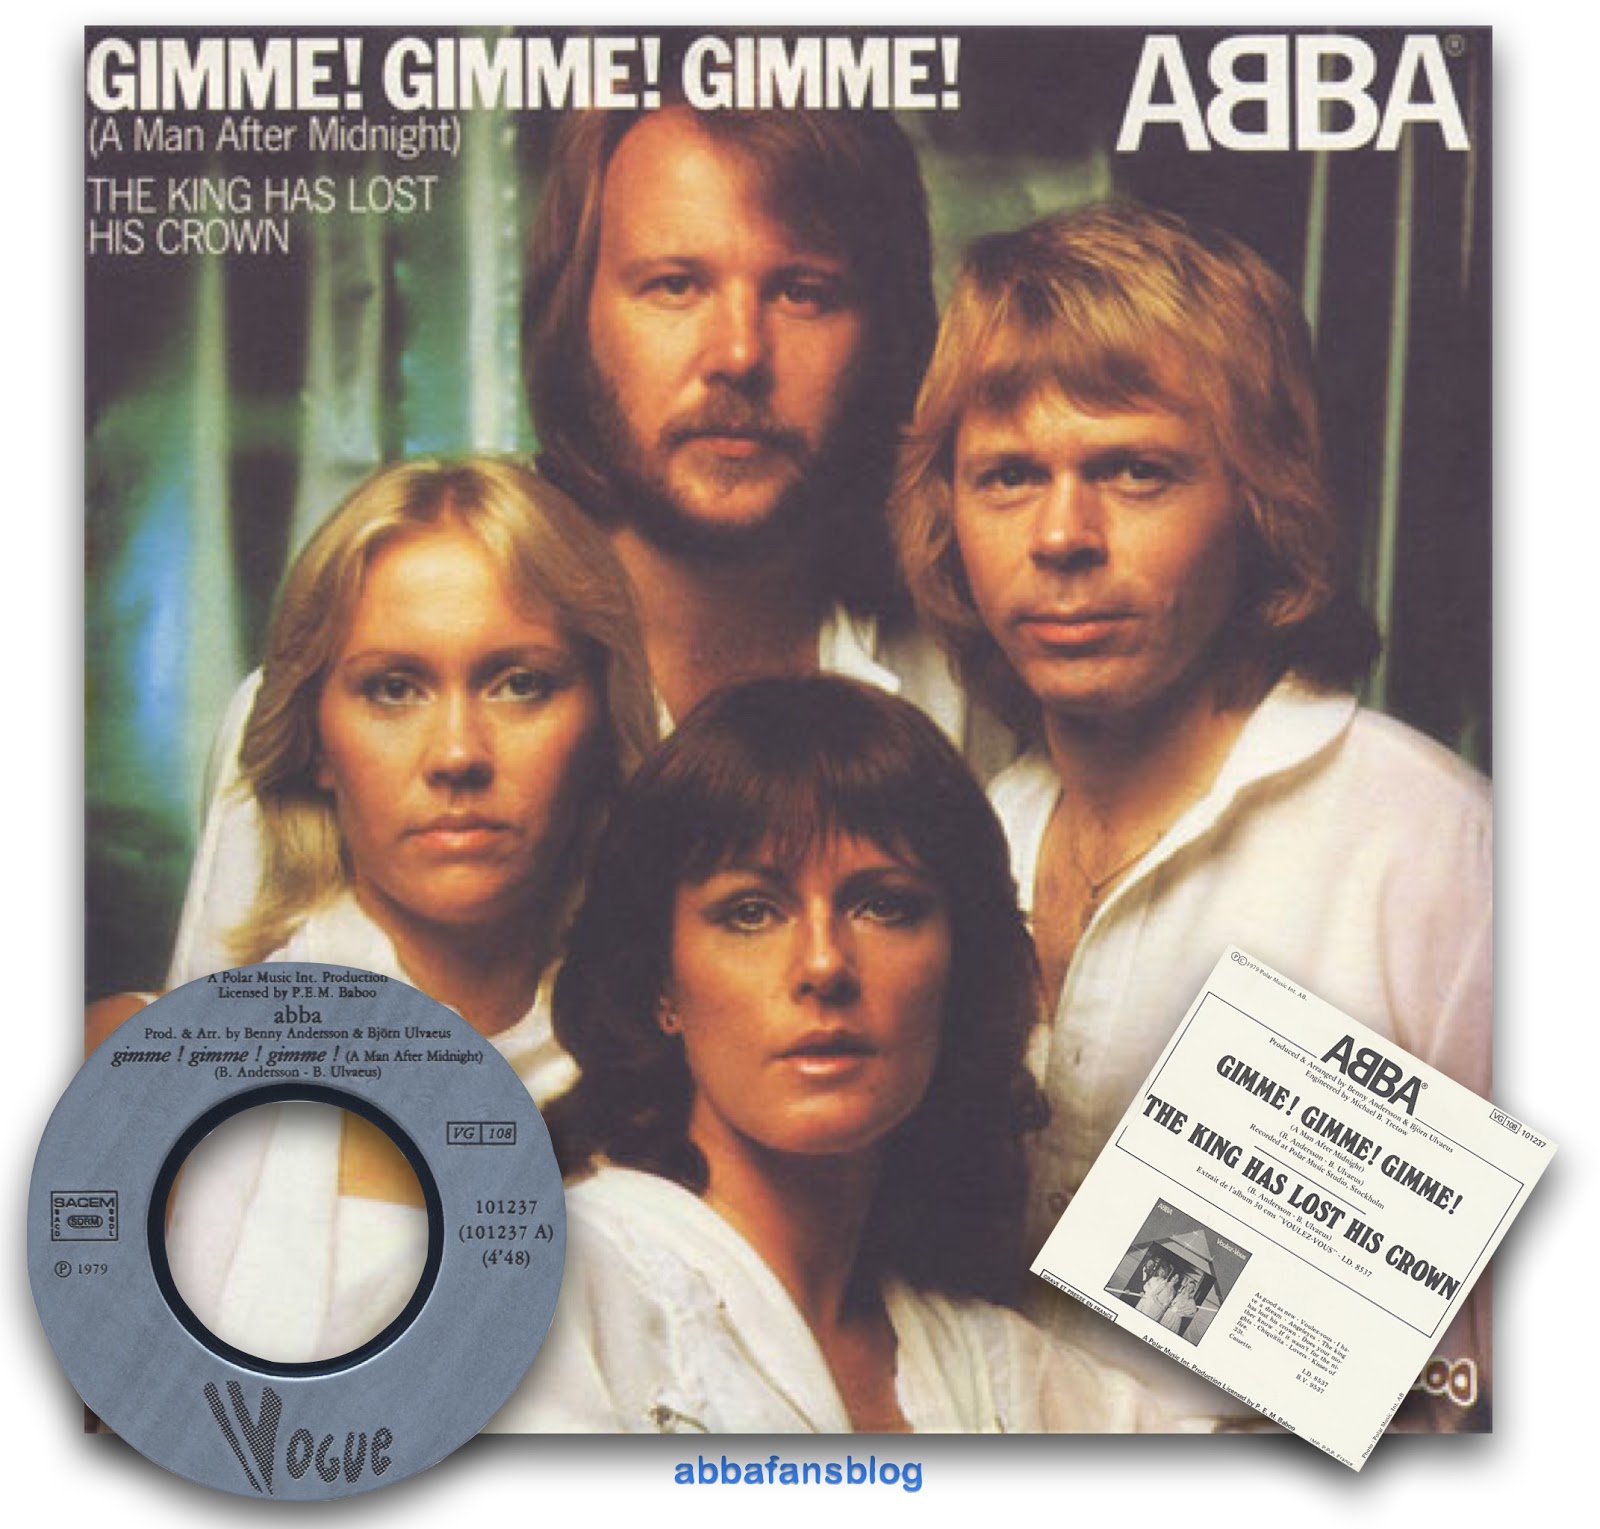 Abba gimme gimme gimme текст. ABBA Gimme обложка. ABBA A man after Midnight. ABBA Gimme Gimme Gimme. ABBA - Gimme! Gimme! Gimme! (A man after Midnight).